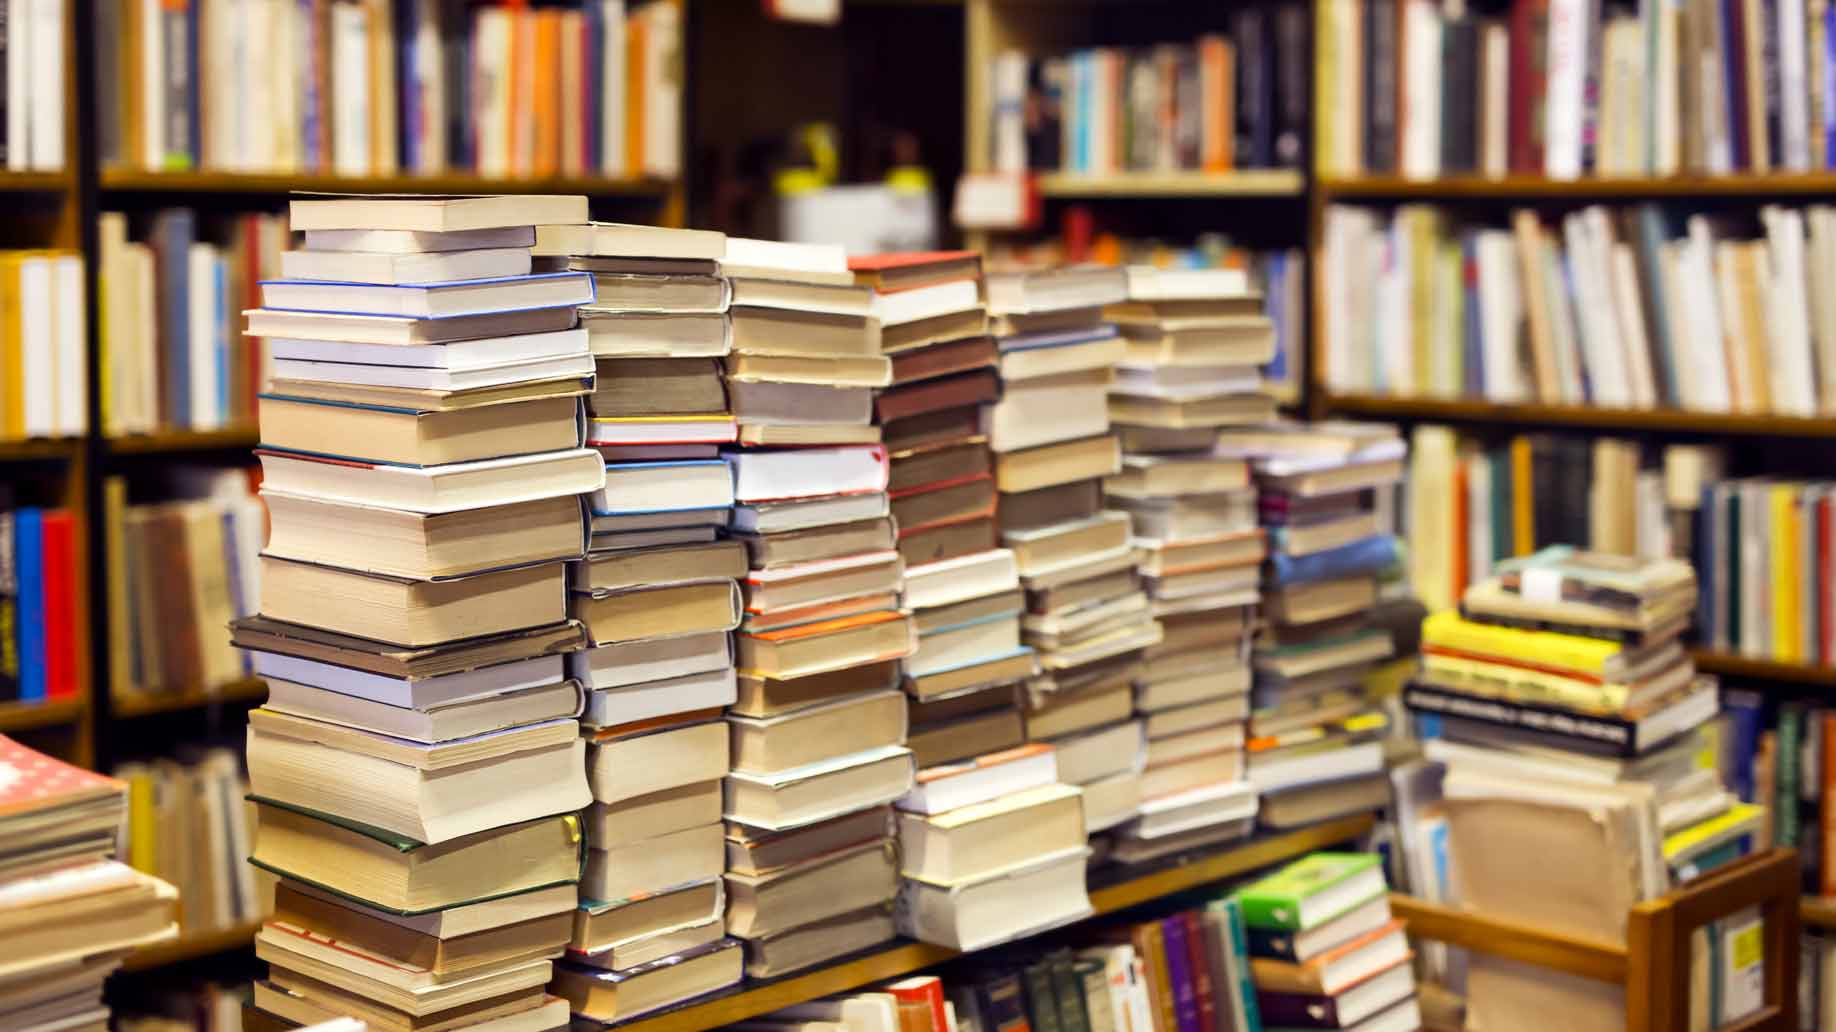 ‘Project Gutenberg’, a mais antiga bibloteca digital, disponibiliza mais de 53 000 livros gratuitos